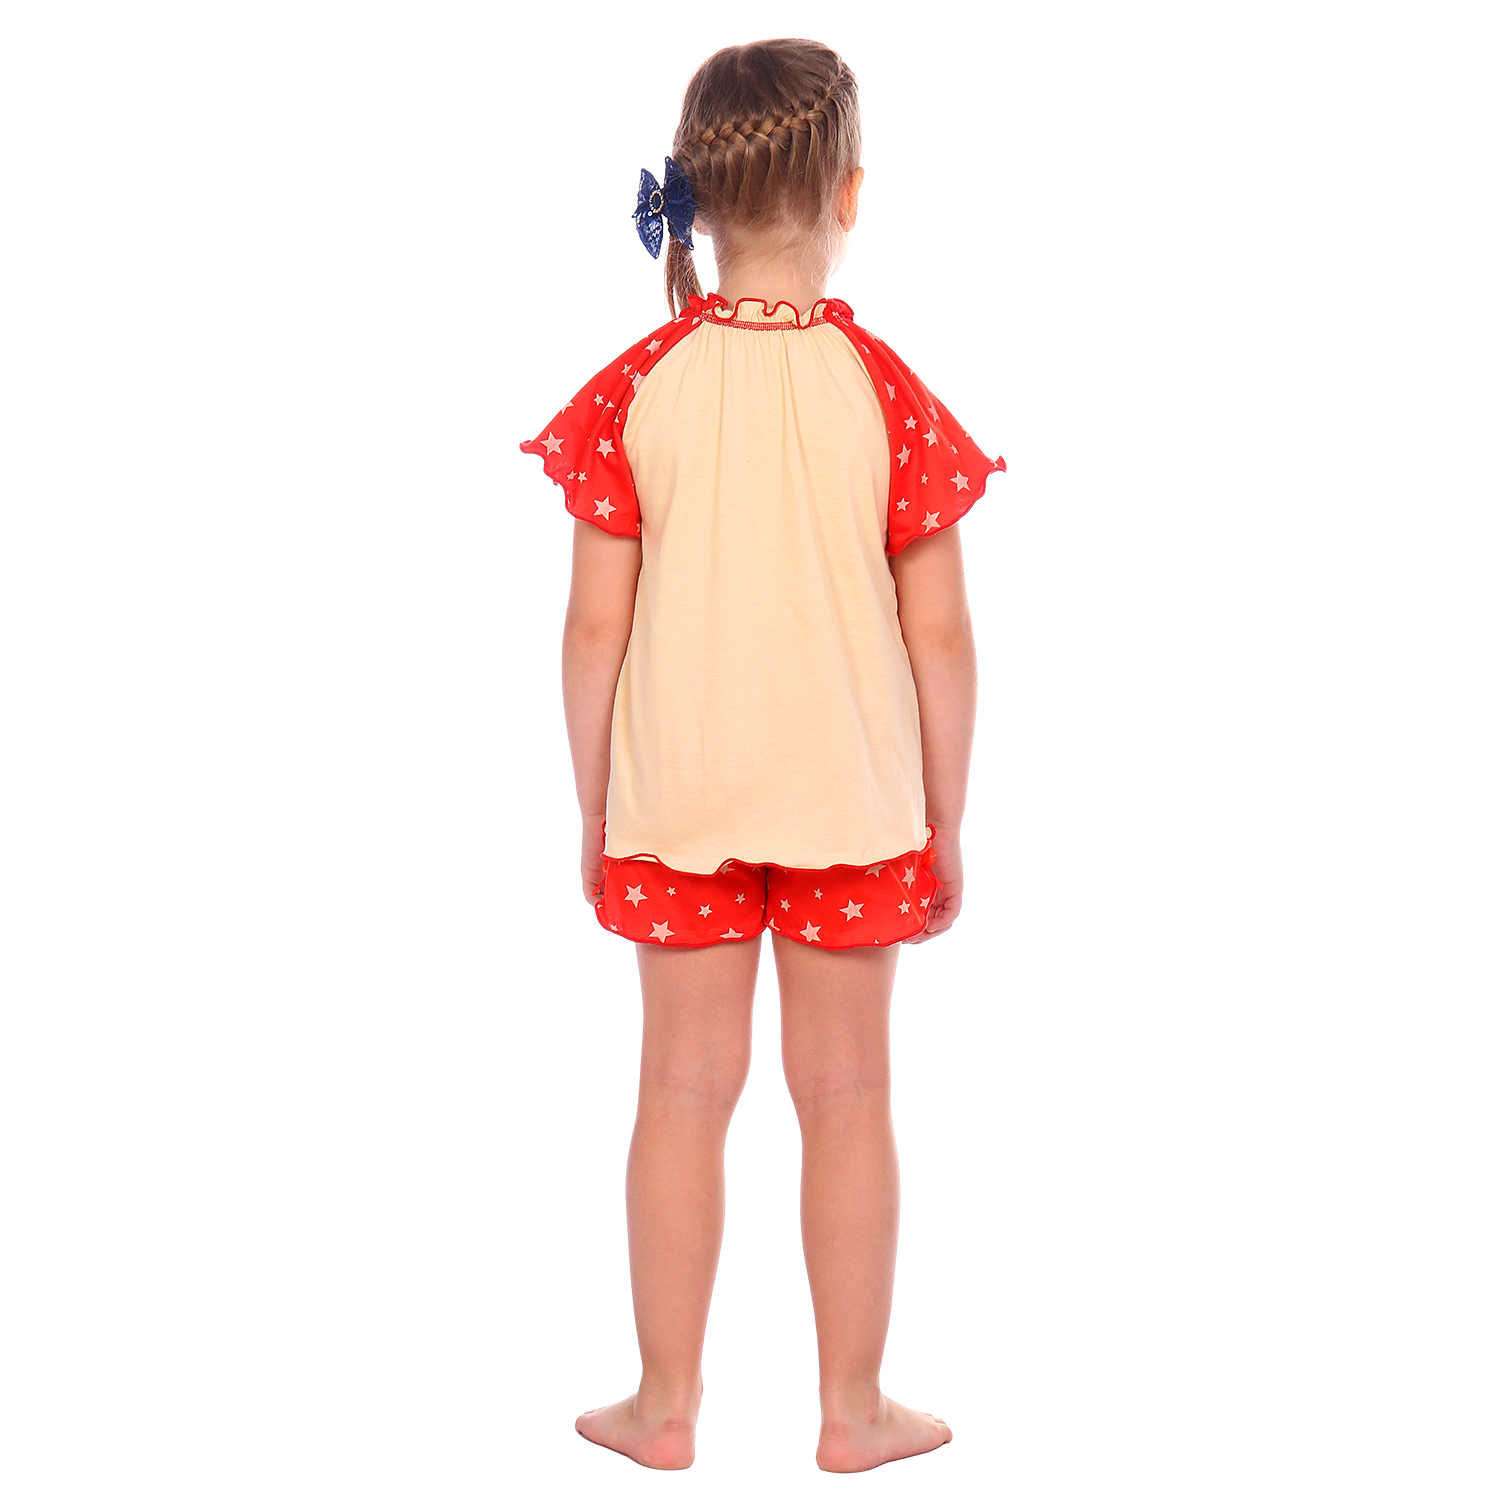 Пижама Детская Одежда S0412К/молочный_красный - фото 6